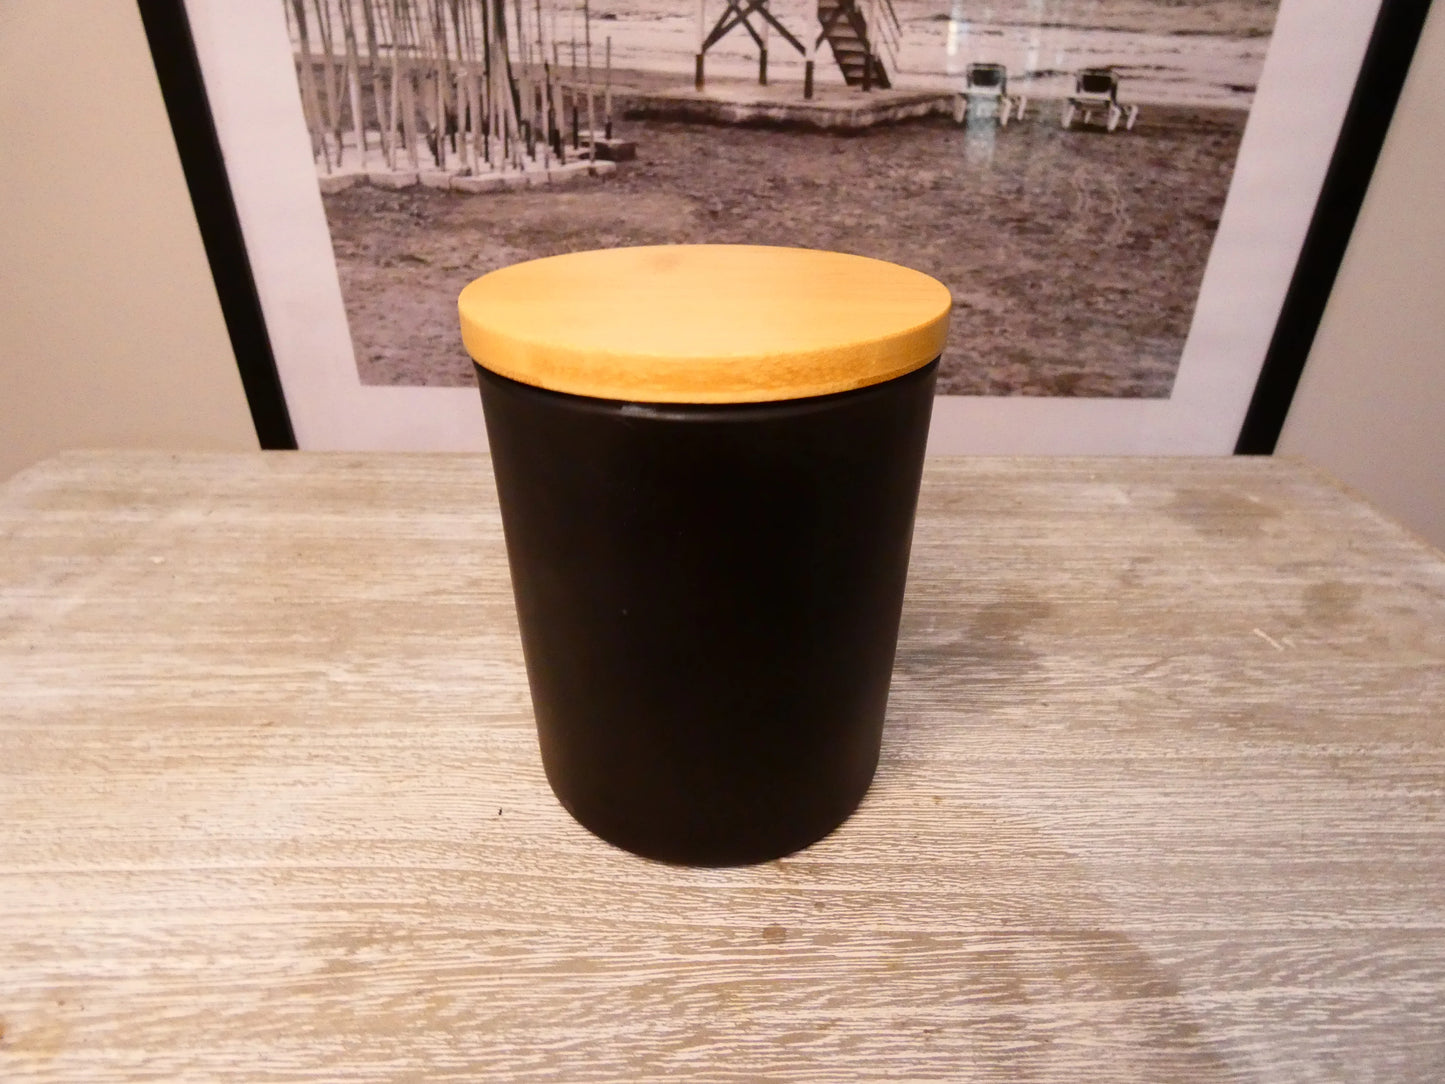 Cambridge Jar; Brazilian Bum Bum Type